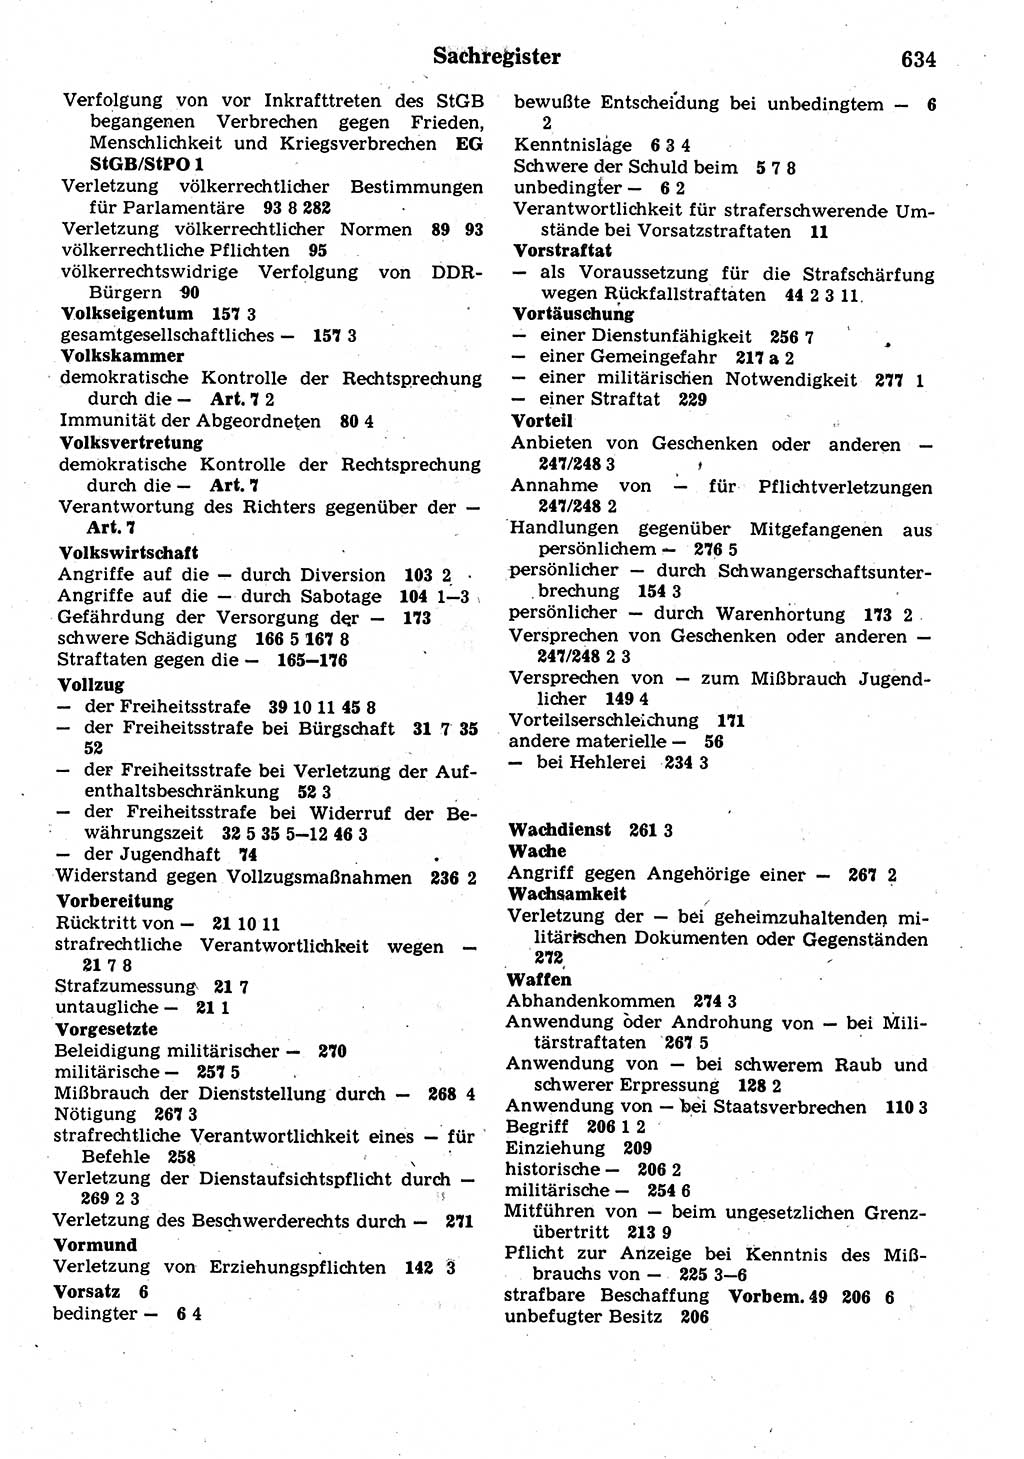 Strafrecht der Deutschen Demokratischen Republik (DDR), Kommentar zum Strafgesetzbuch (StGB) 1987, Seite 634 (Strafr. DDR Komm. StGB 1987, S. 634)